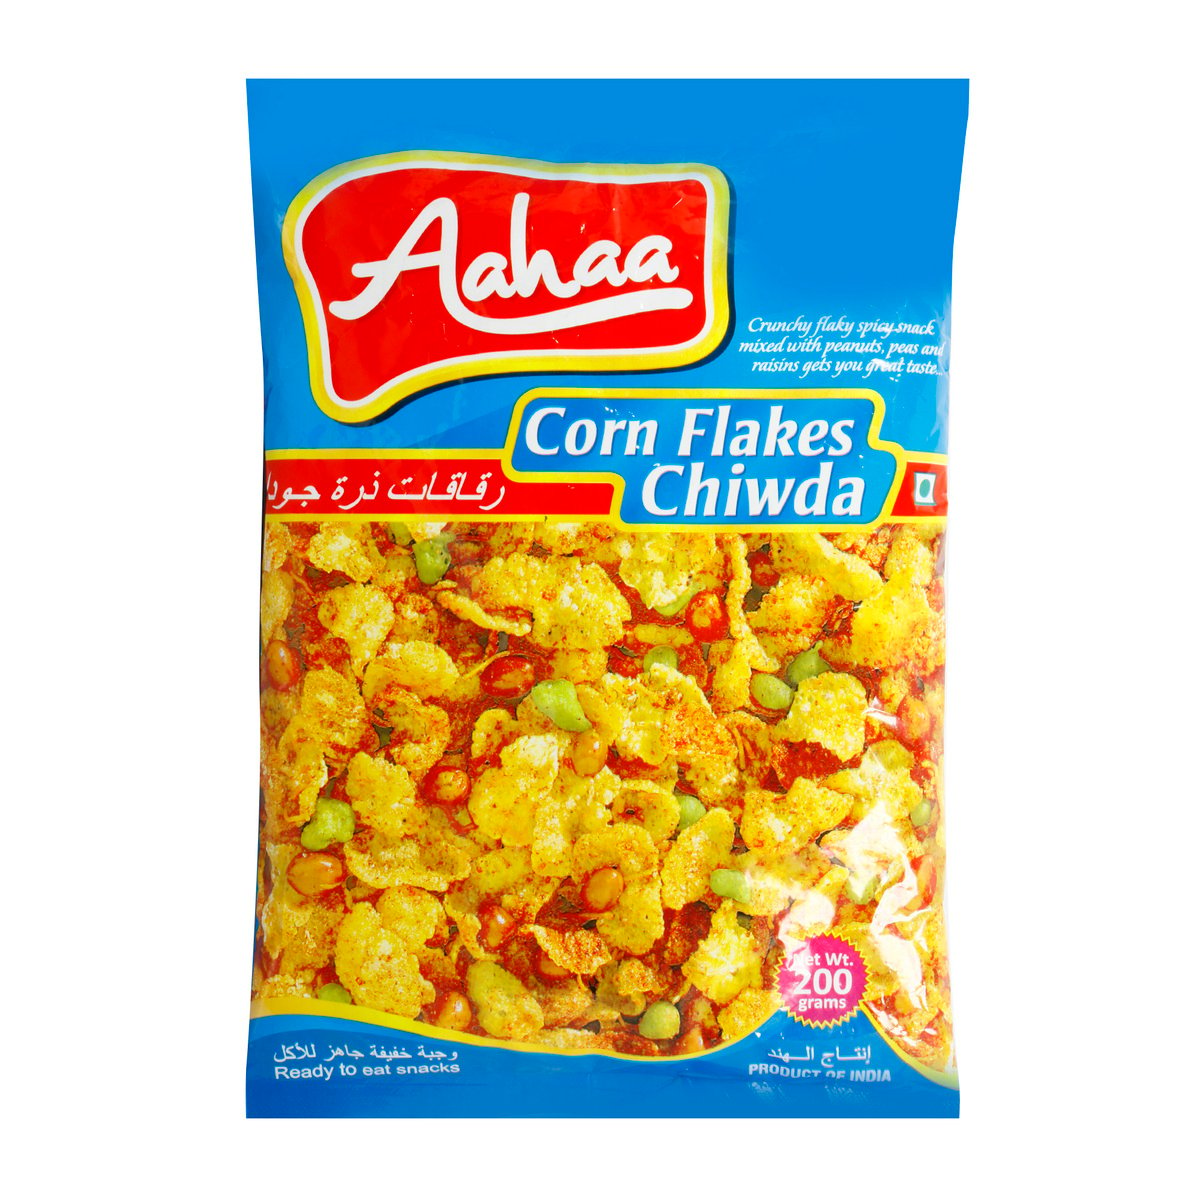 Aahaa Corn Flakes Chiwda 200g